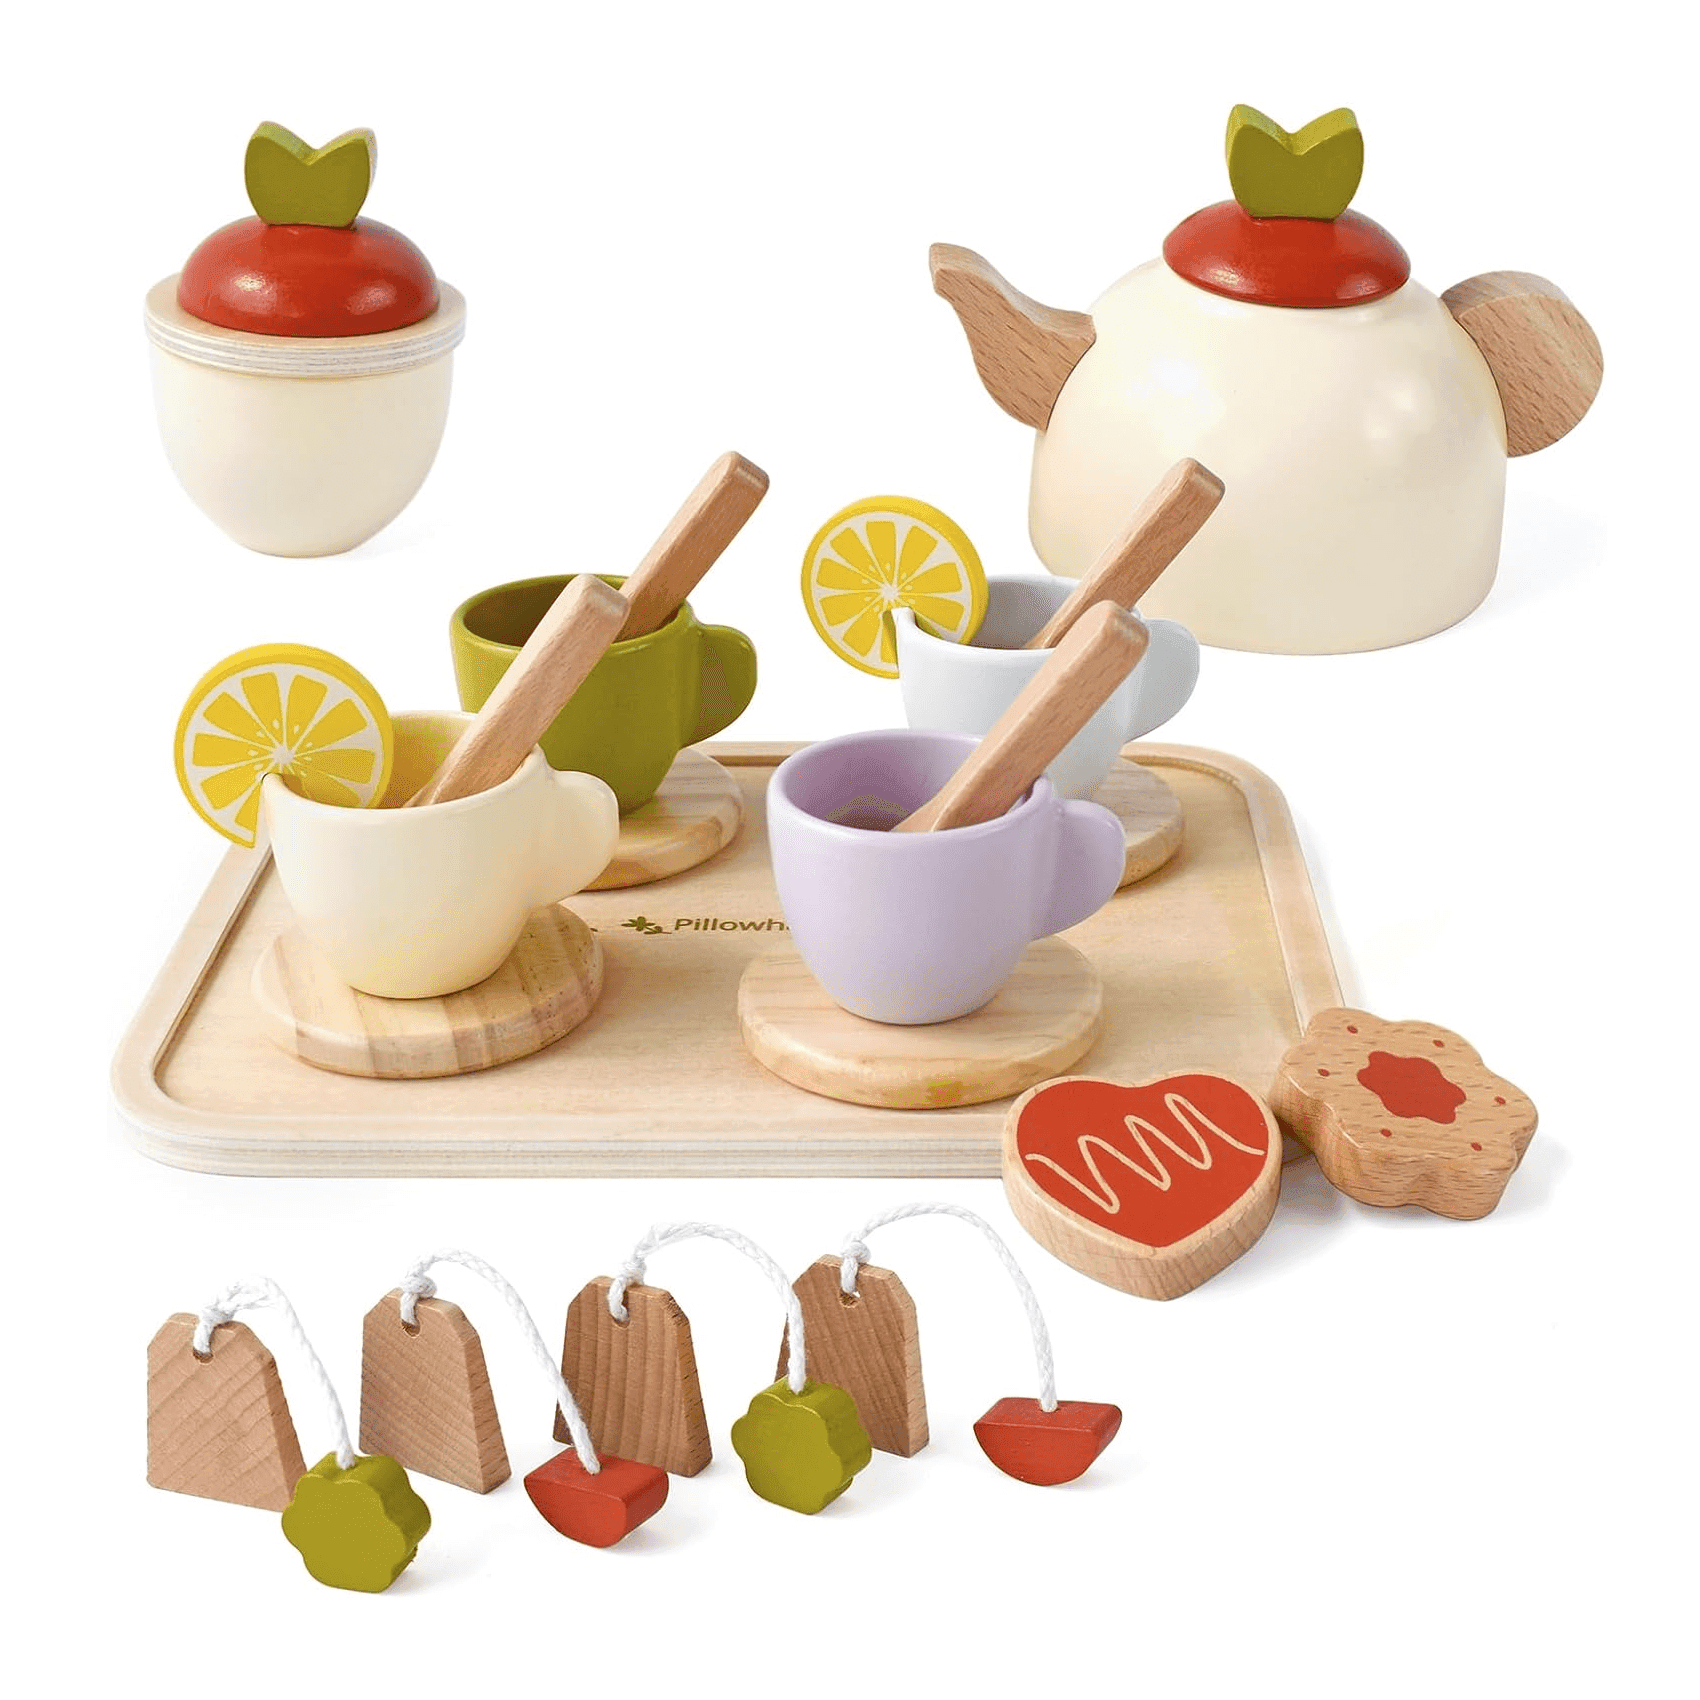 Montessori Pillowhale Tea Party Toys Set